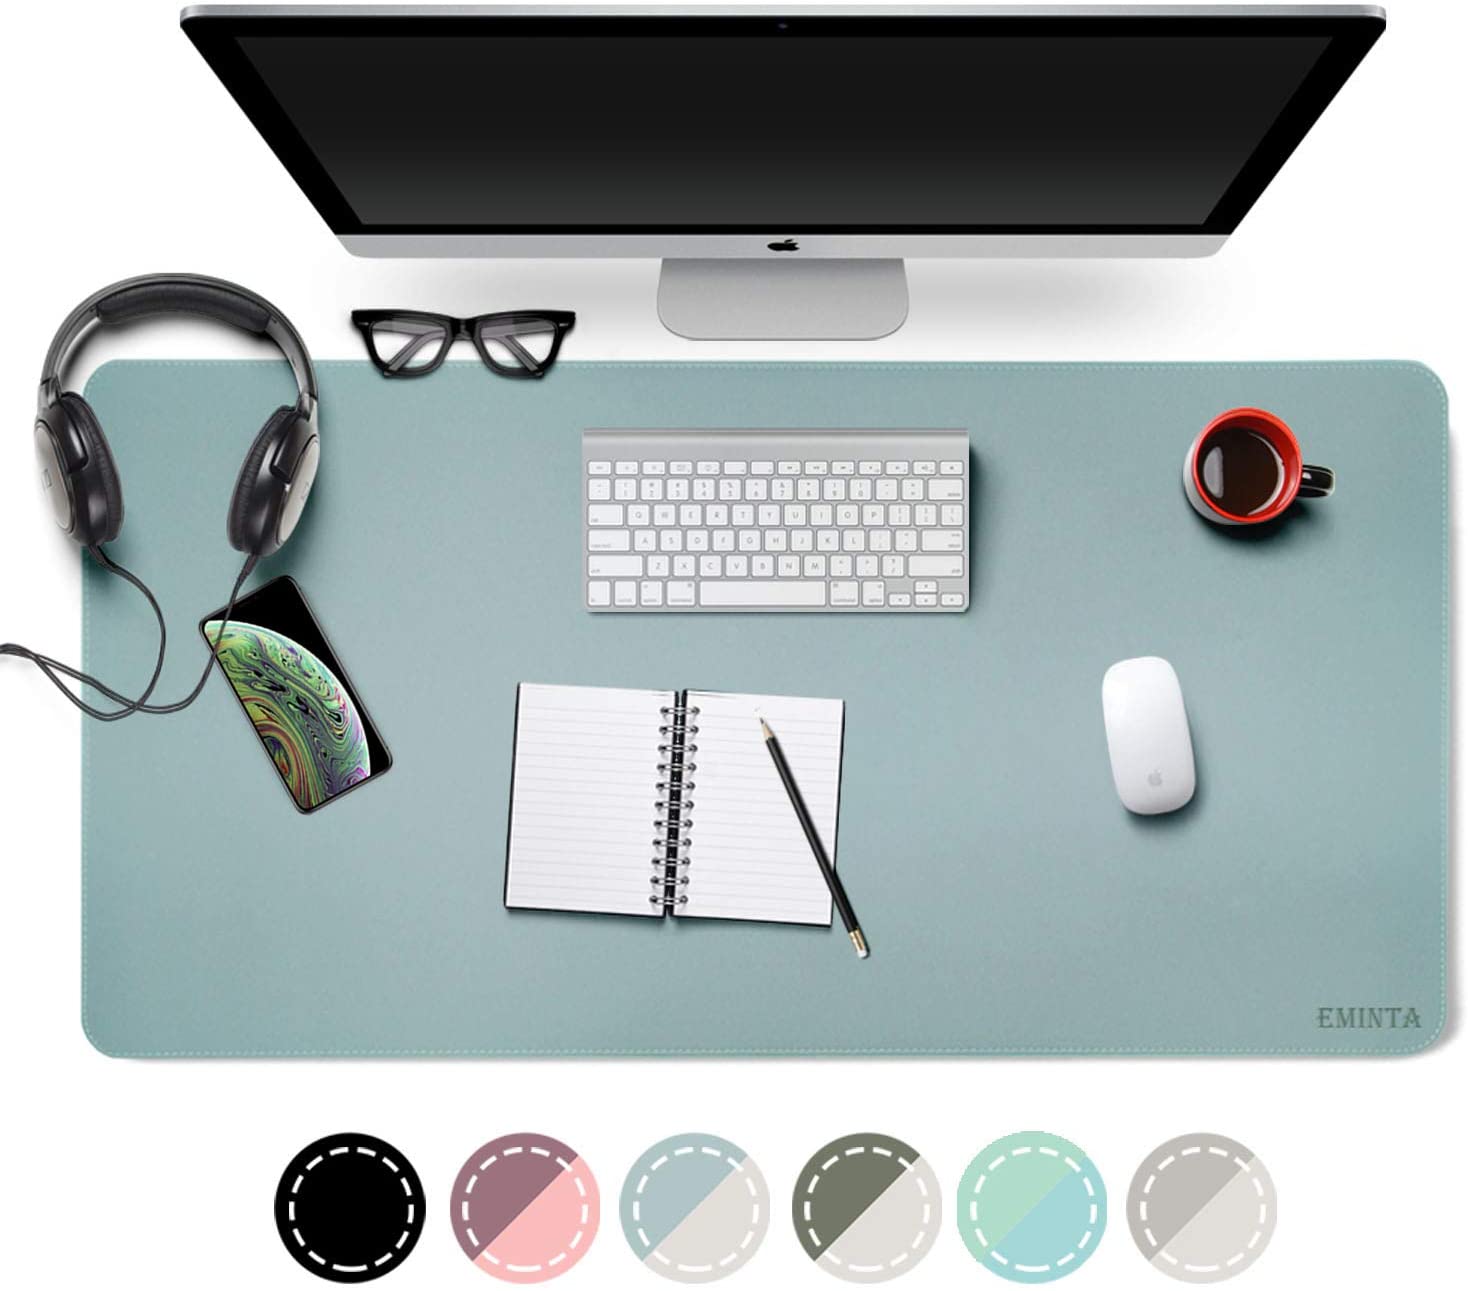 Desktop Padded Office Desk Mat by Eminta - Waterproof